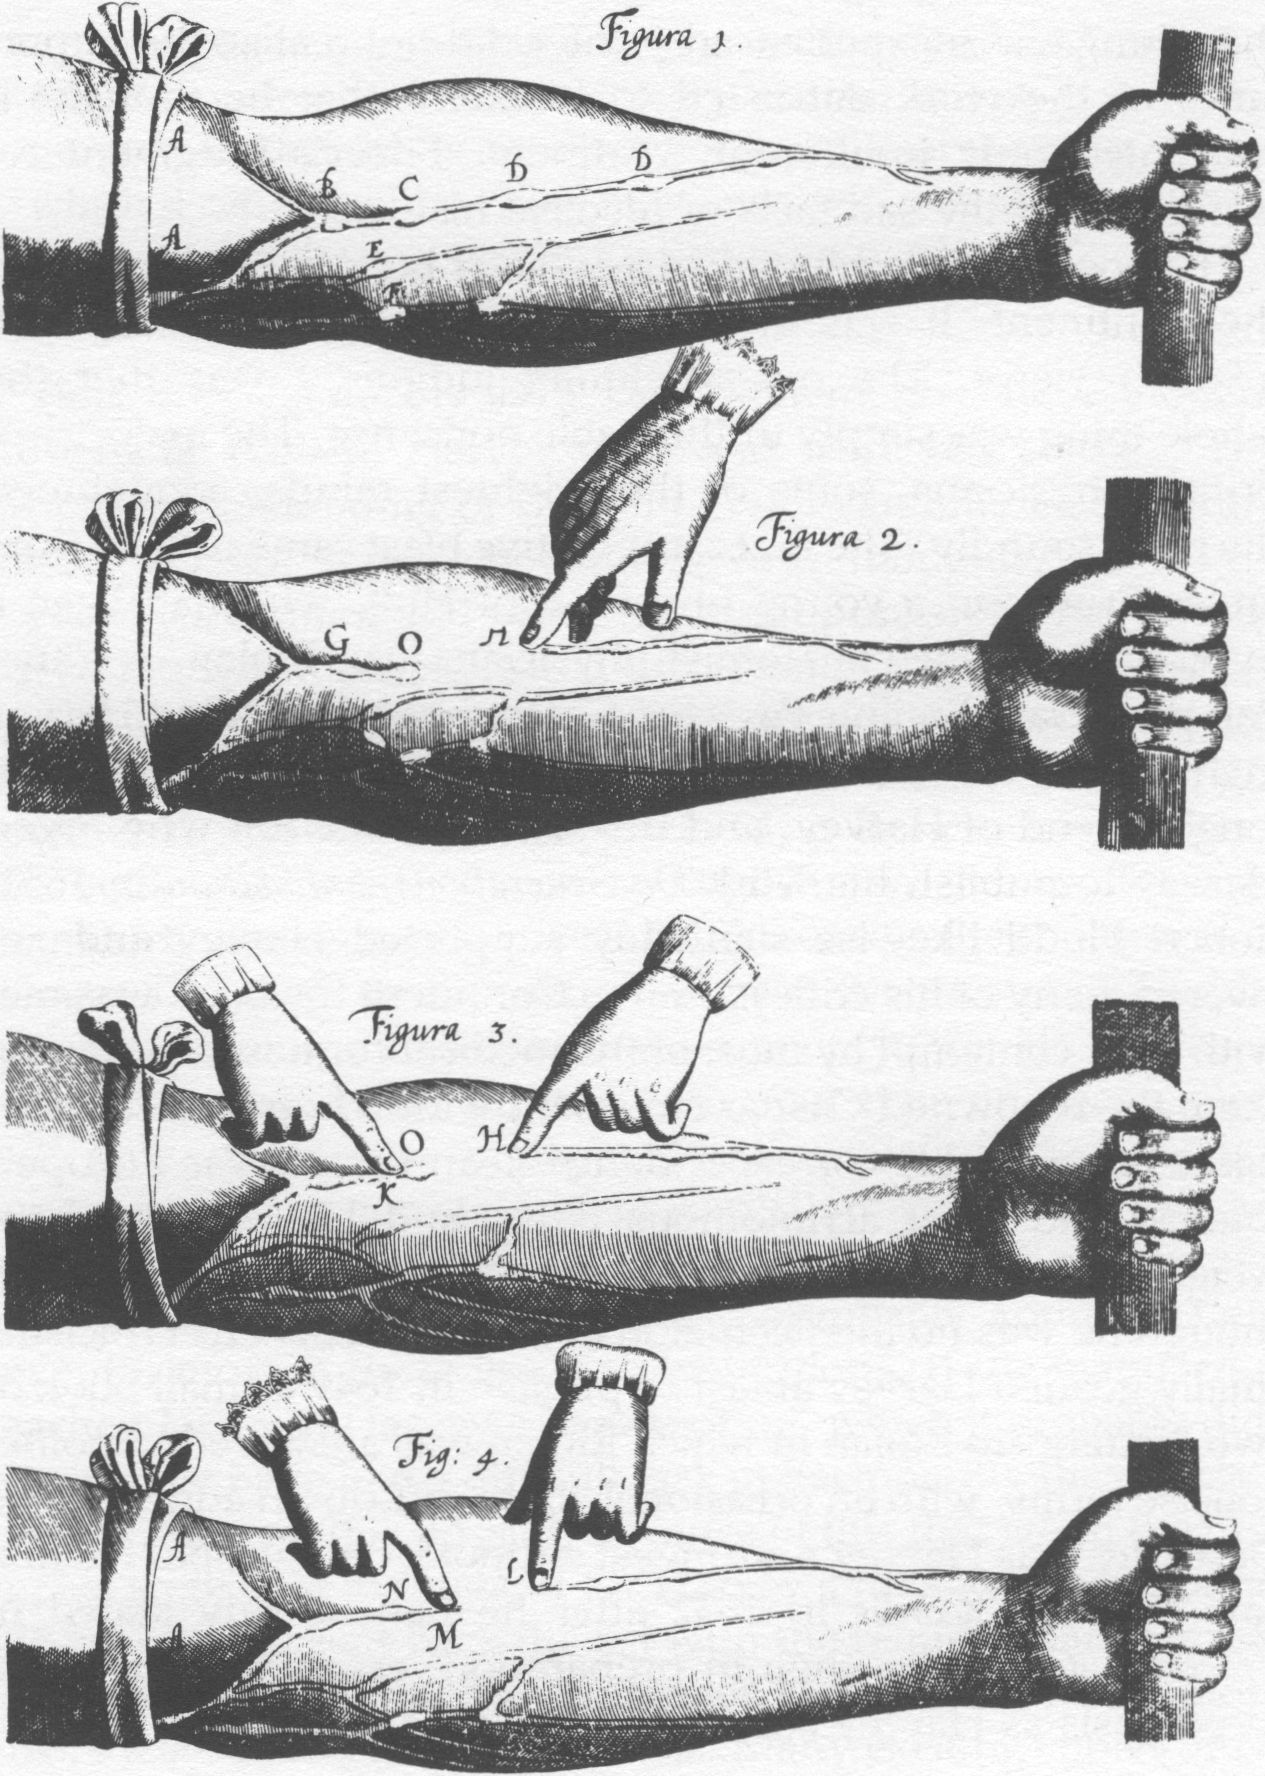 Ilustração em preto e branco do experimento do médico britânico William Harvey sobre as válvulas venosas. Há um braço com a marcação de diversas veias e desenhos de mãos que apontam para elas.